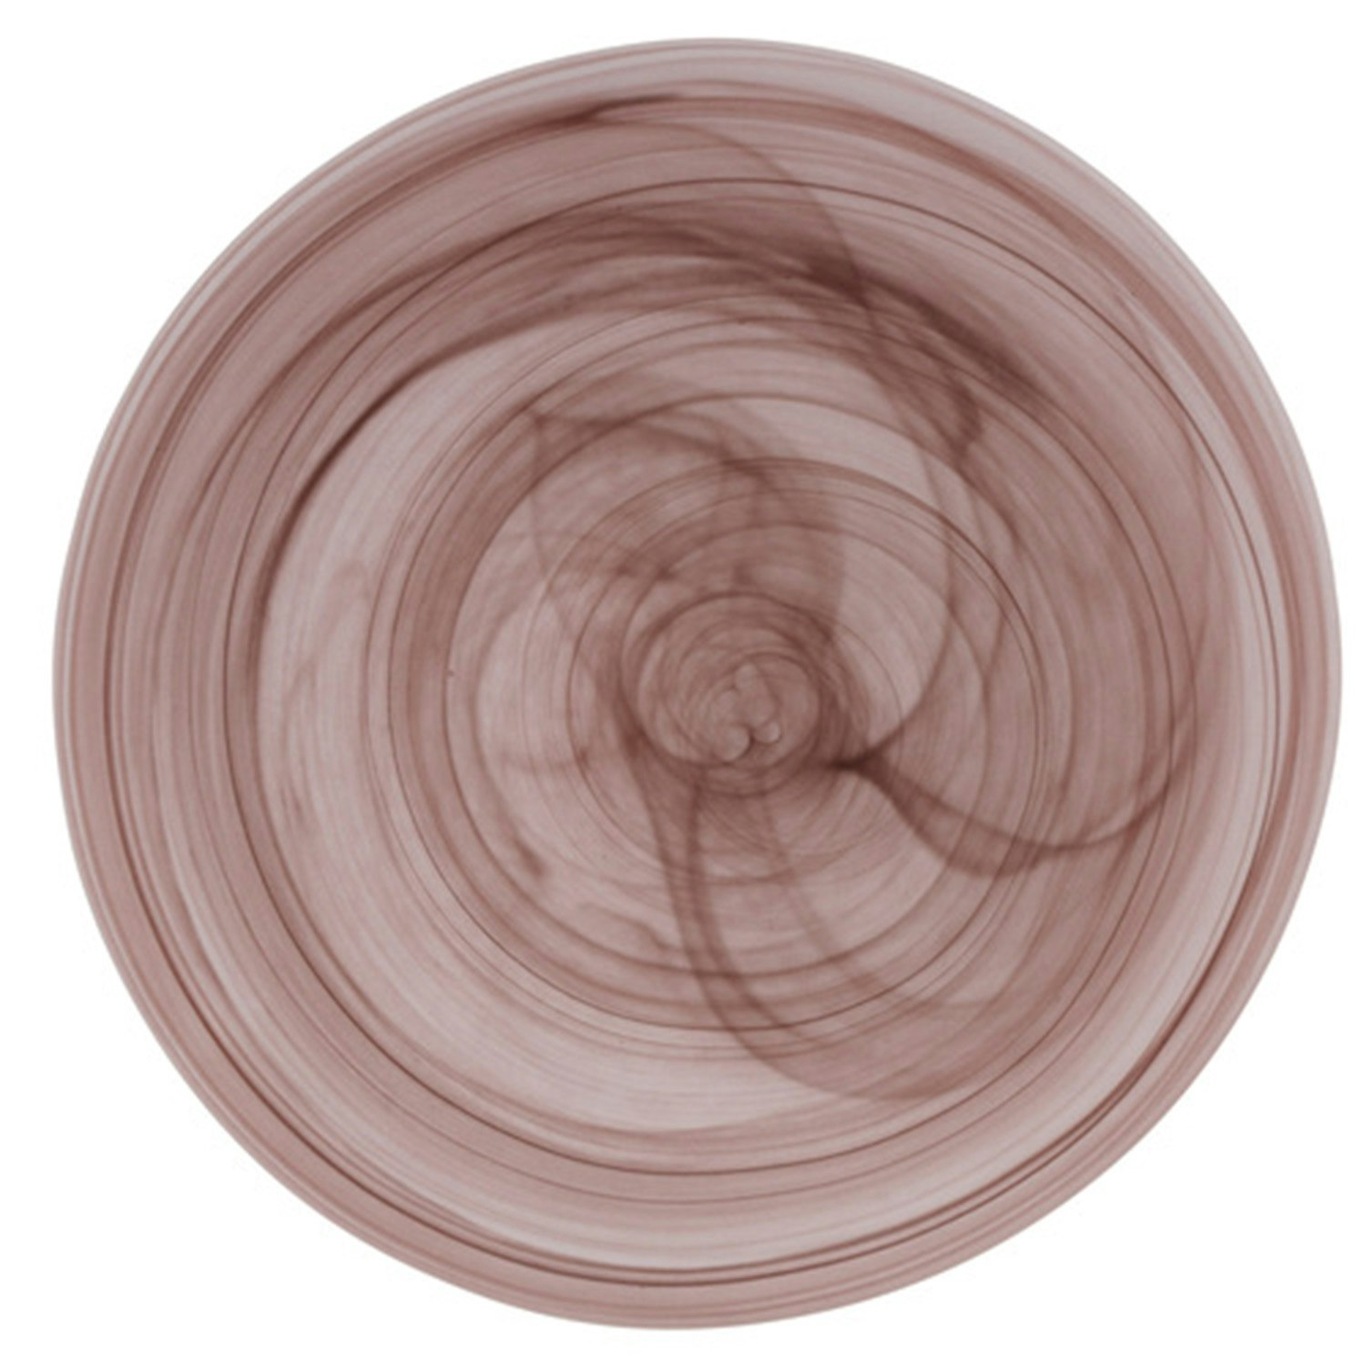 Cosmic Plate Ø16 cm, Brown